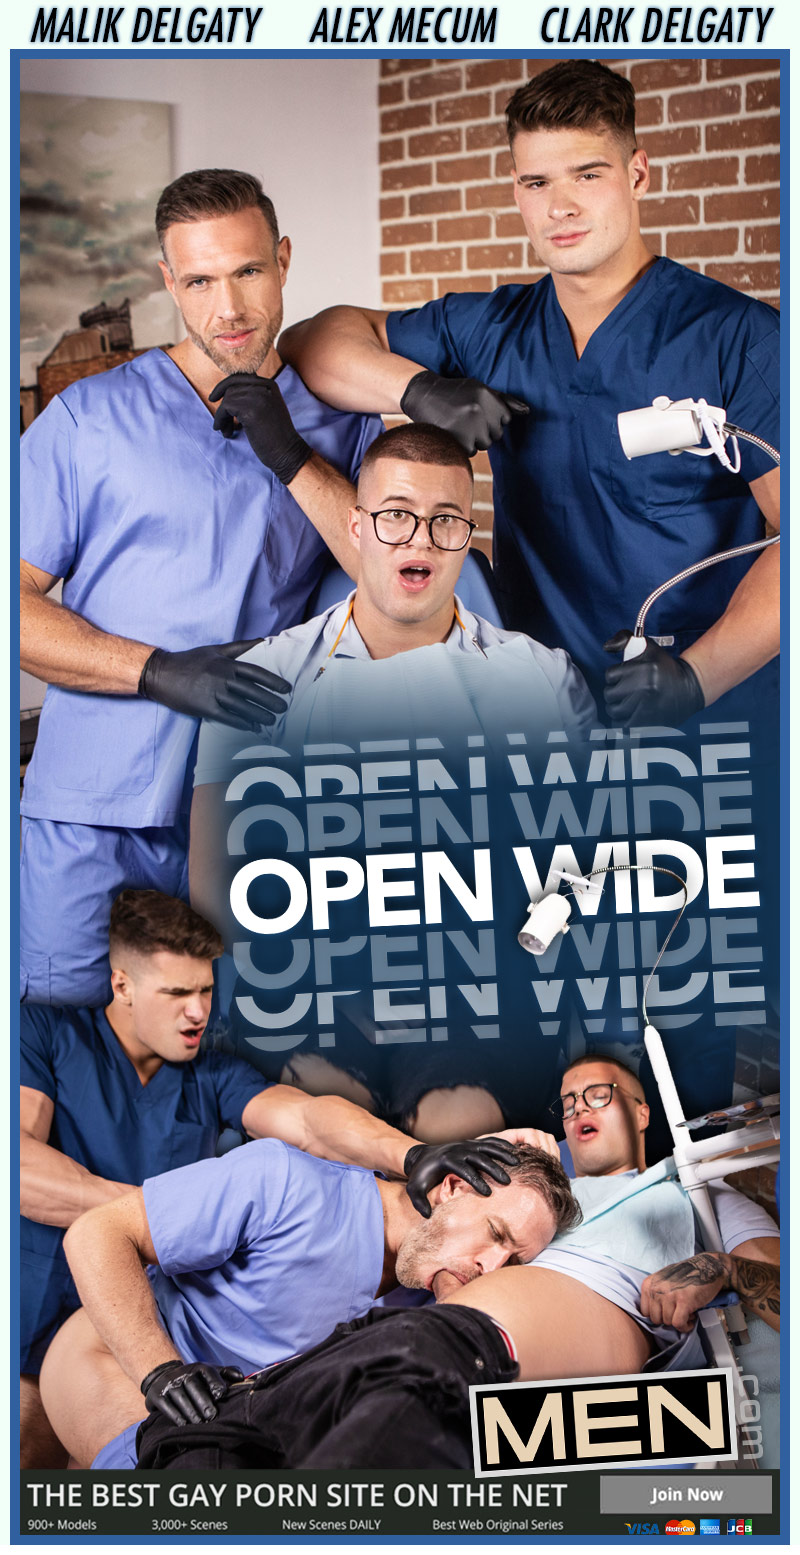 Open Wide (Malik Delgaty and Clark Delgaty Tag-Team Dental Assistant Alex Mecum) at MEN.com